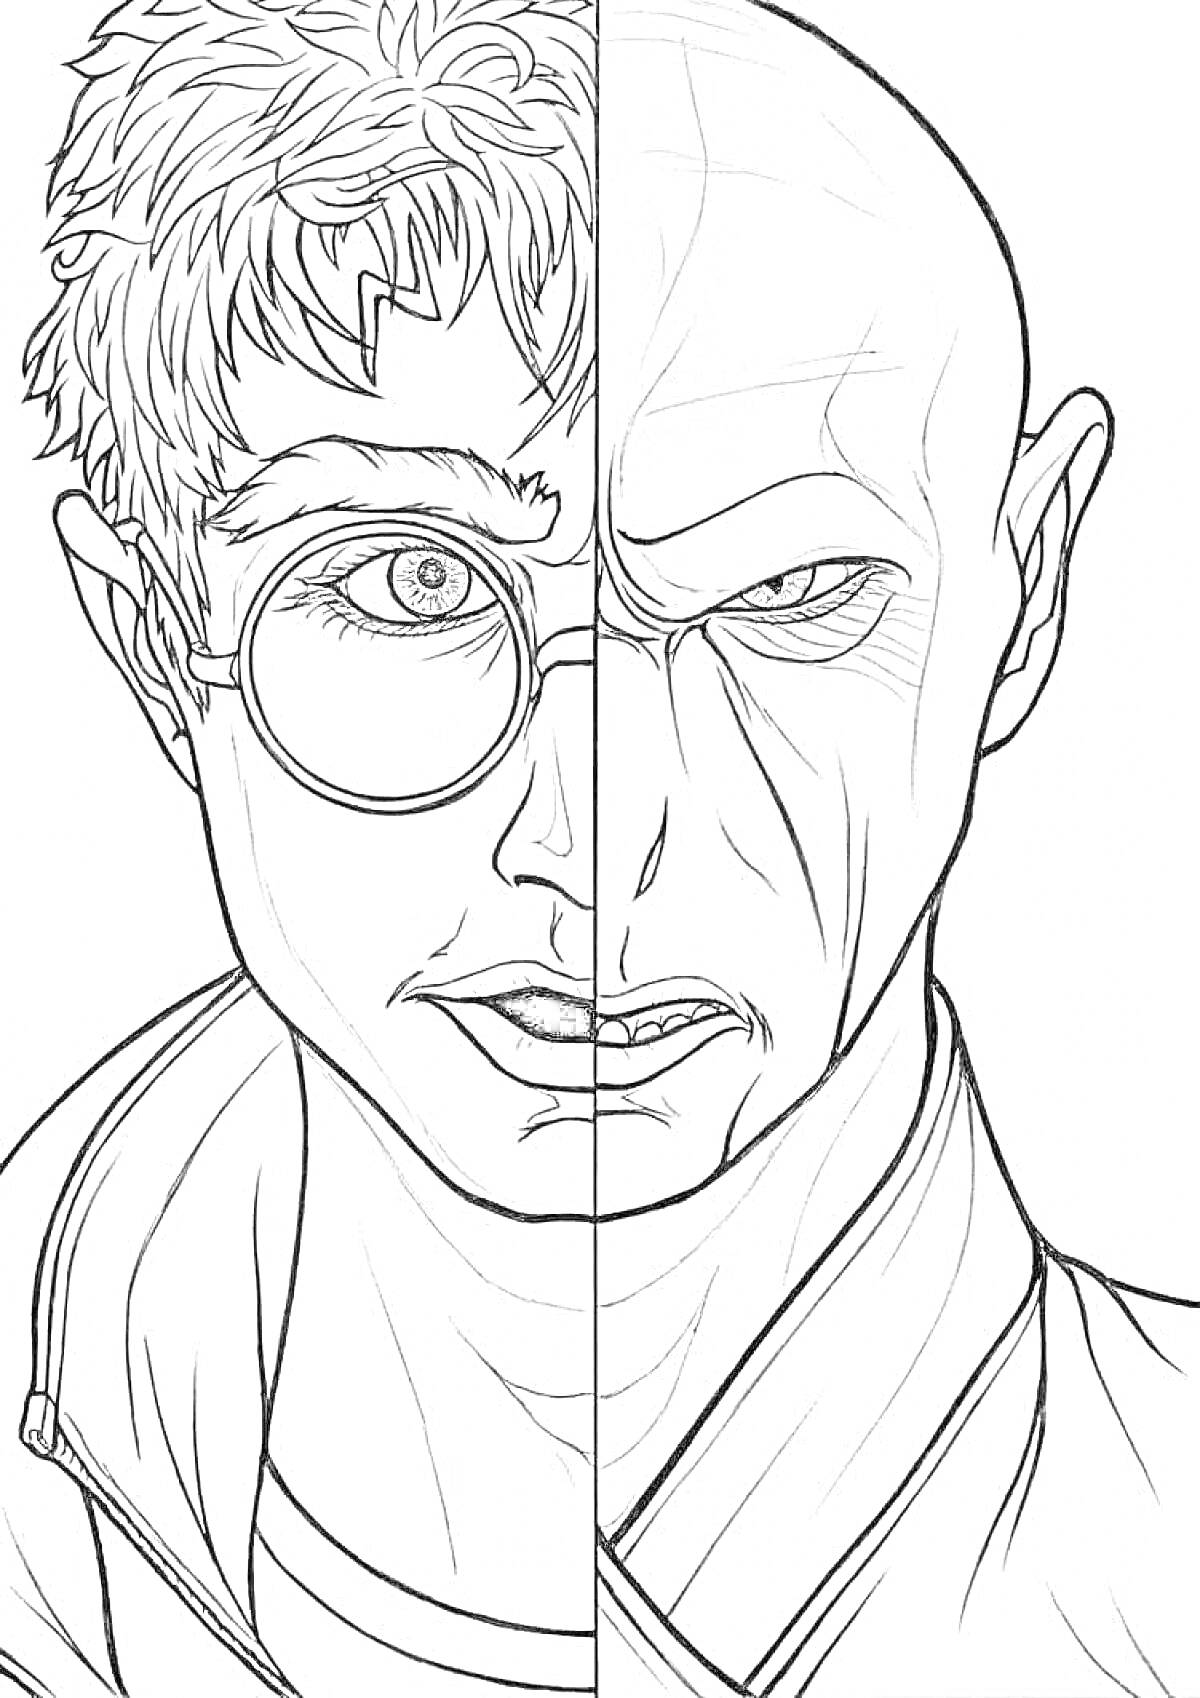 Раскраска Разделённый портрет, половина - персонаж с очками, другая половина - лысый персонаж со злобным выражением лица и шрамами